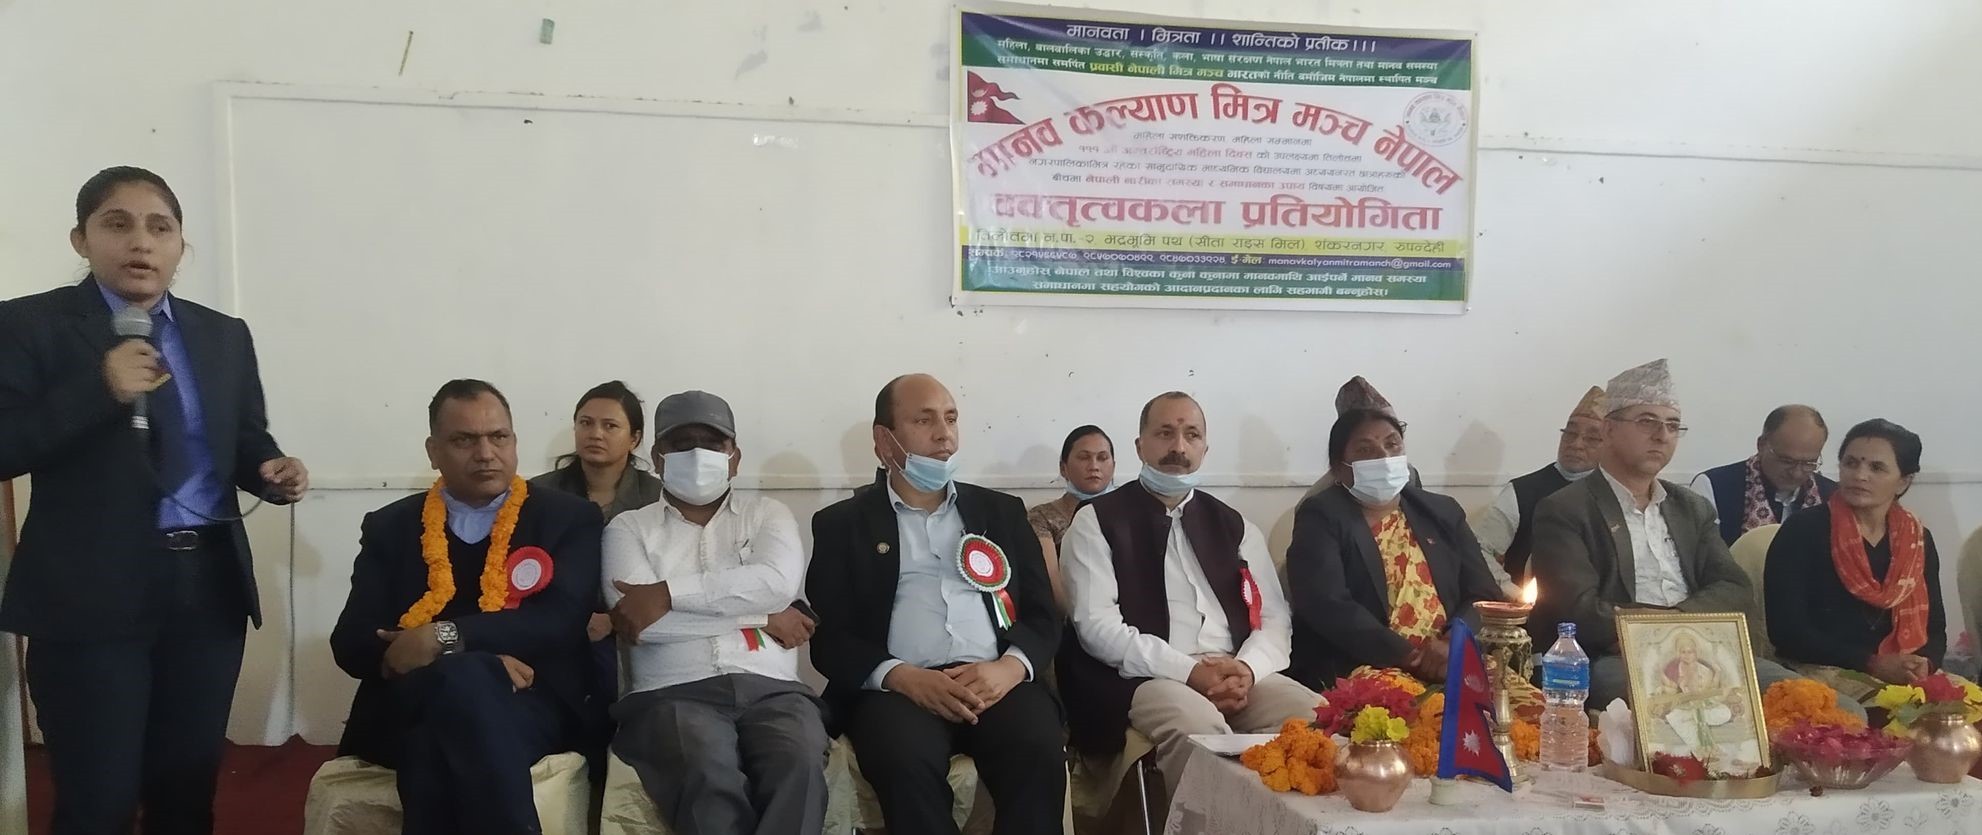 'नेपाली नारिका समस्या र समाधानका उपाय’ शिर्षकमा वक्तृत्वकला प्रतियोगिता